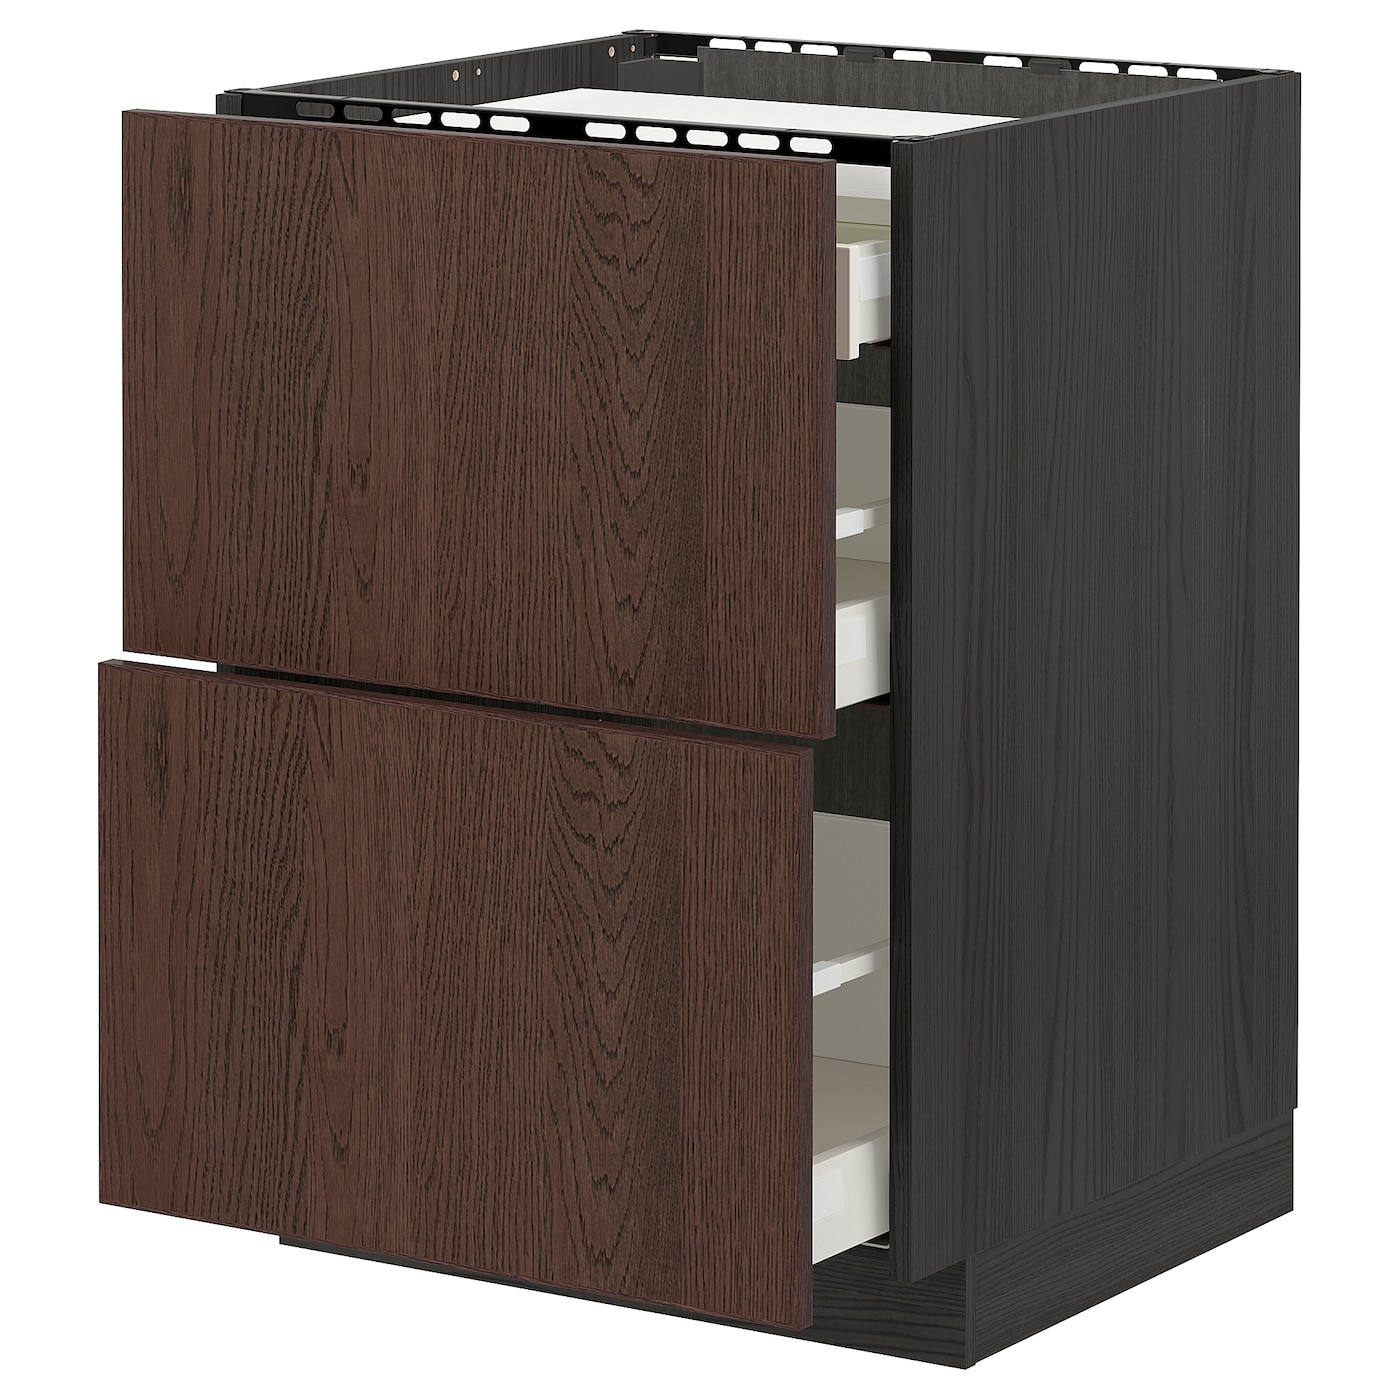 Напольный шкаф  - IKEA METOD MAXIMERA, 88x61,6x60см, черный/коричневый, МЕТОД МАКСИМЕРА ИКЕА